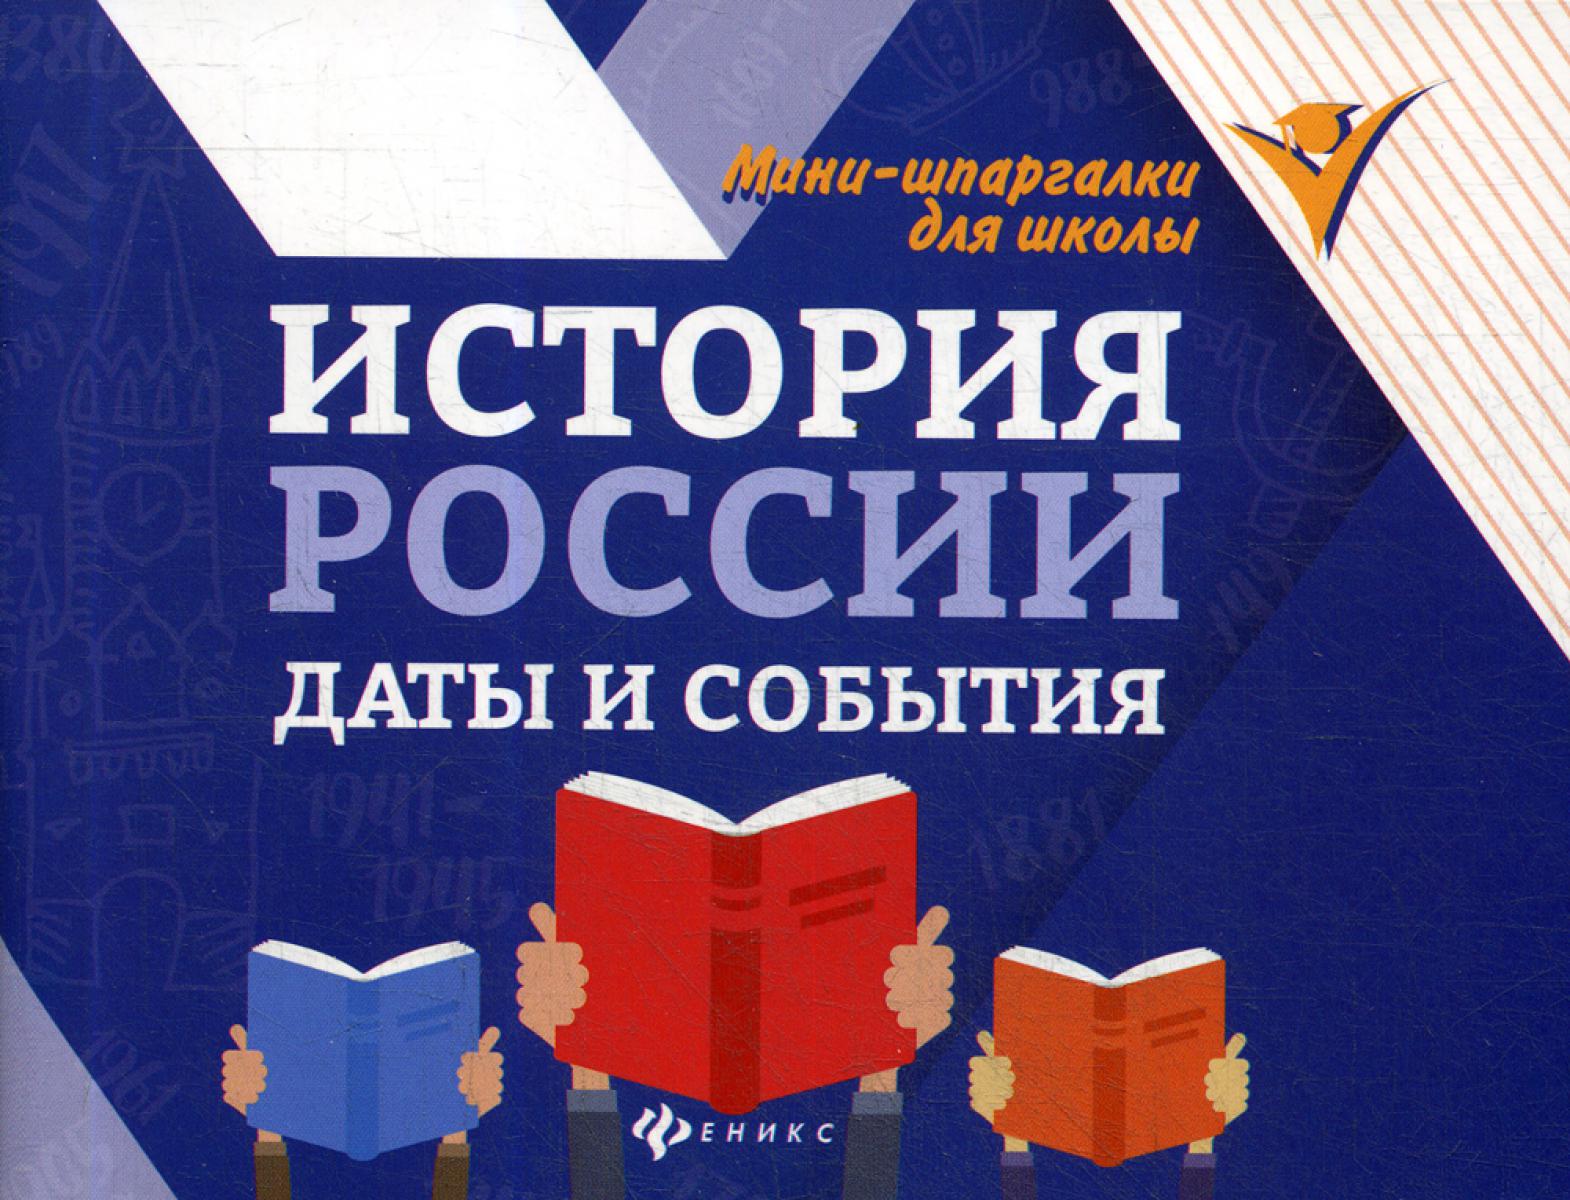 Контрольная работа по теме Преподавание истории России в средней школе до октября 1917 года